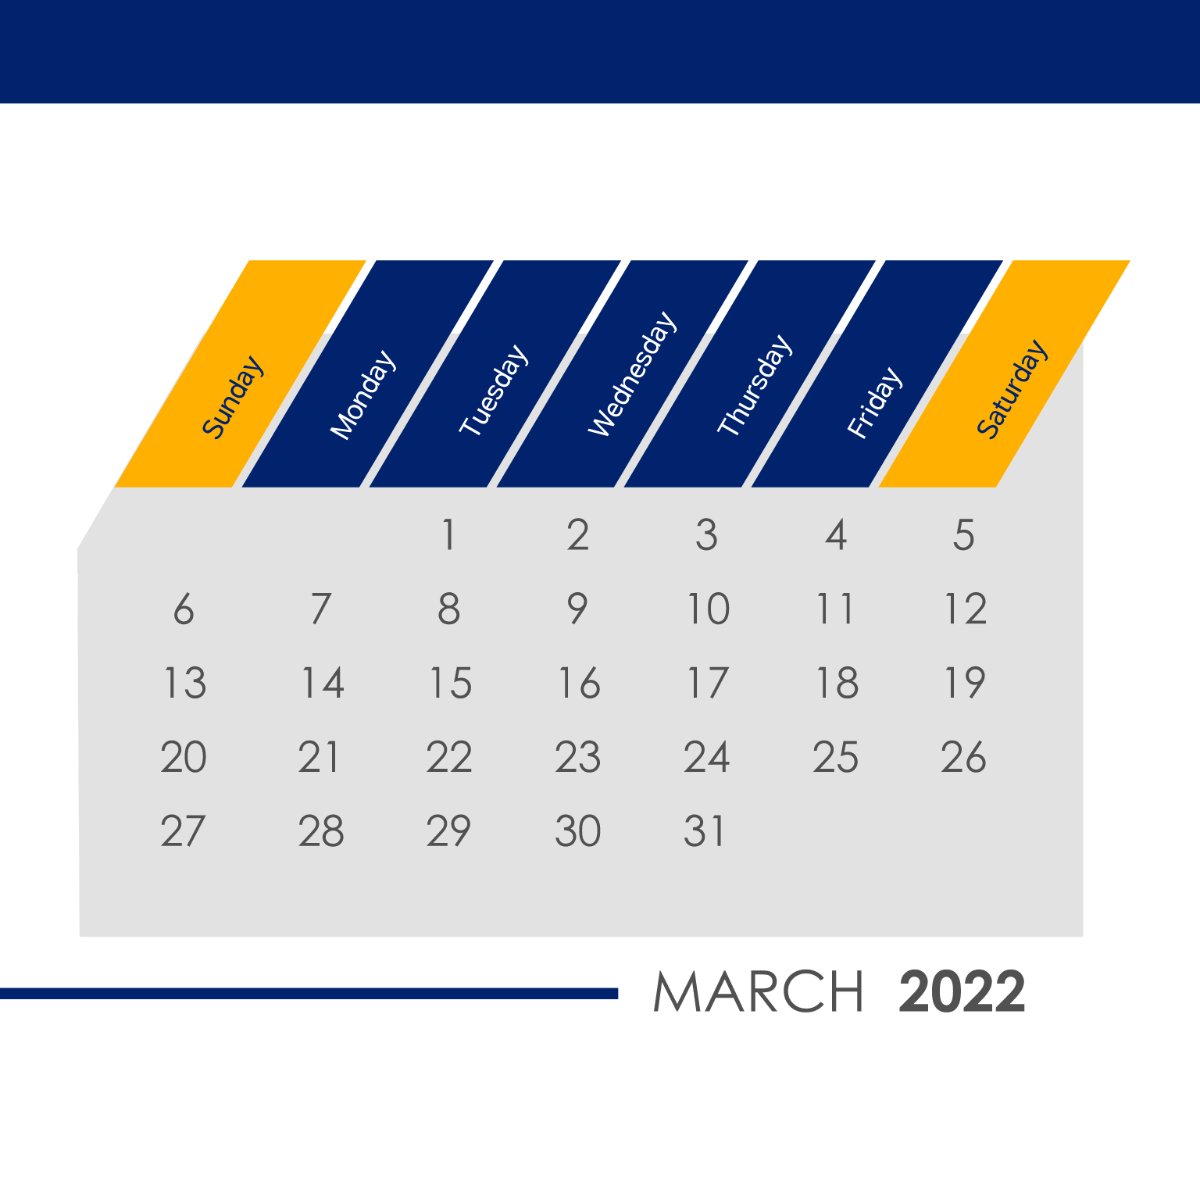 March 2022 Business Calendar Vector Template